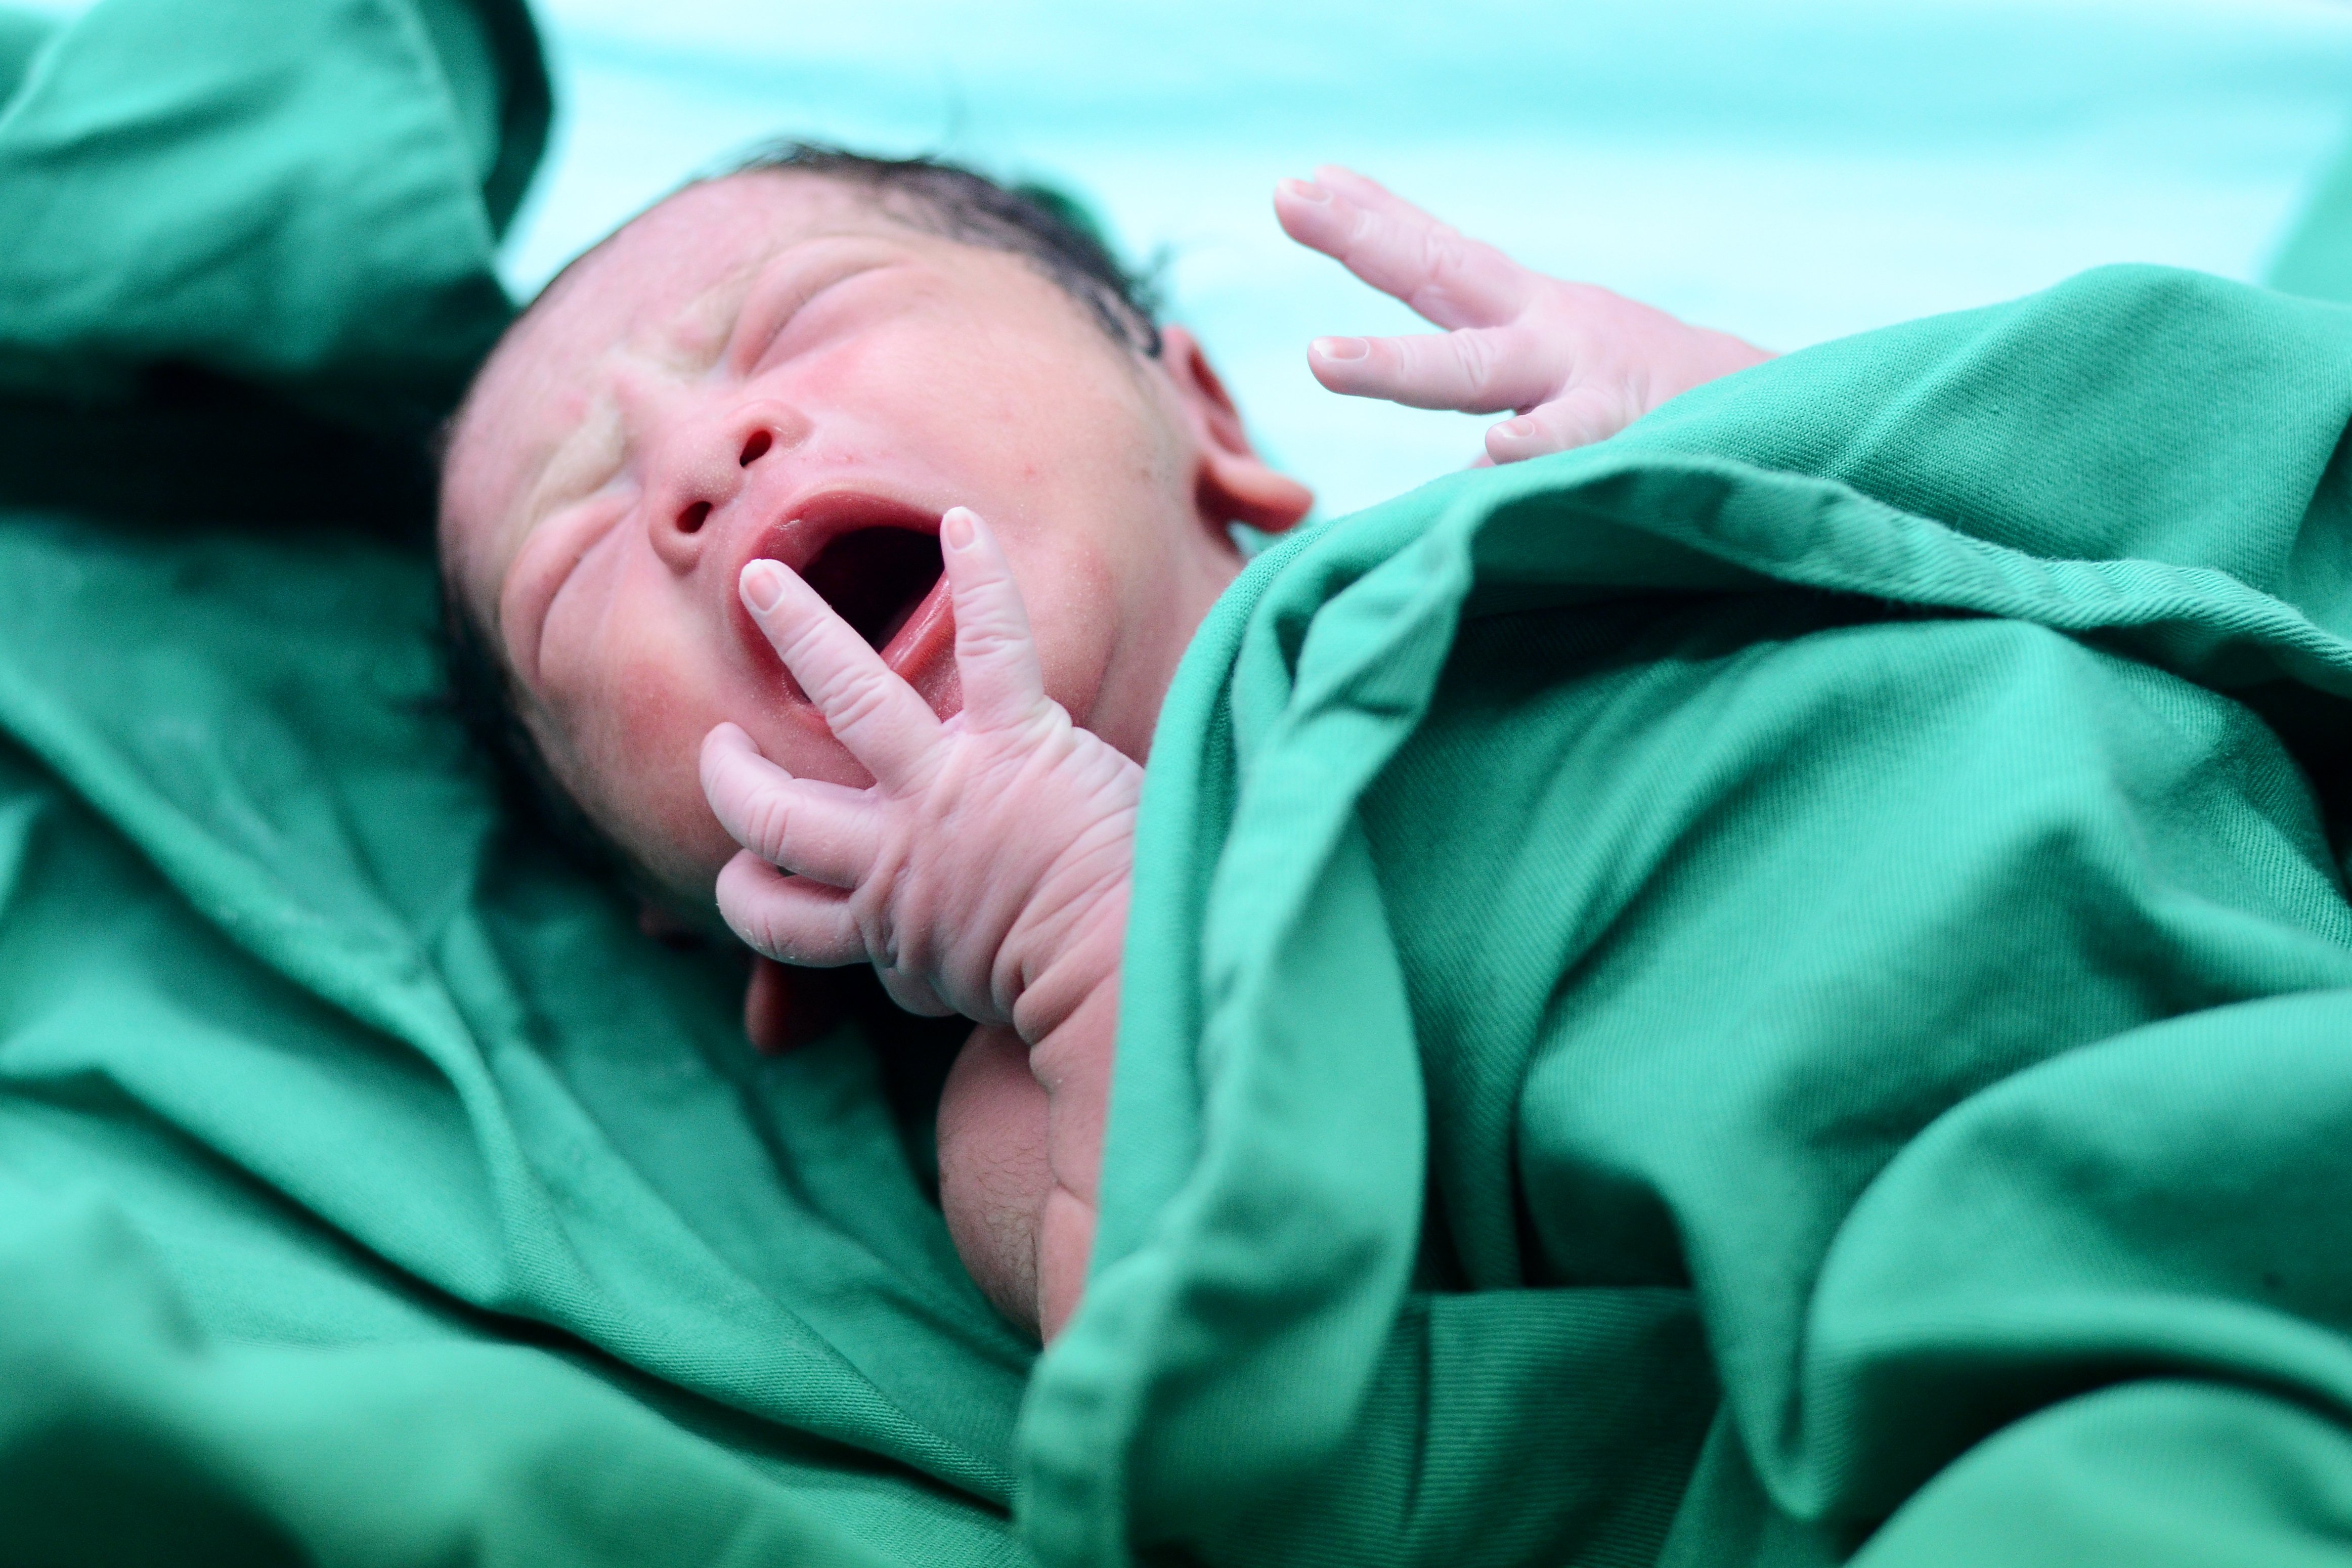 Bebé recién nacido. Fuente: Shutterstock